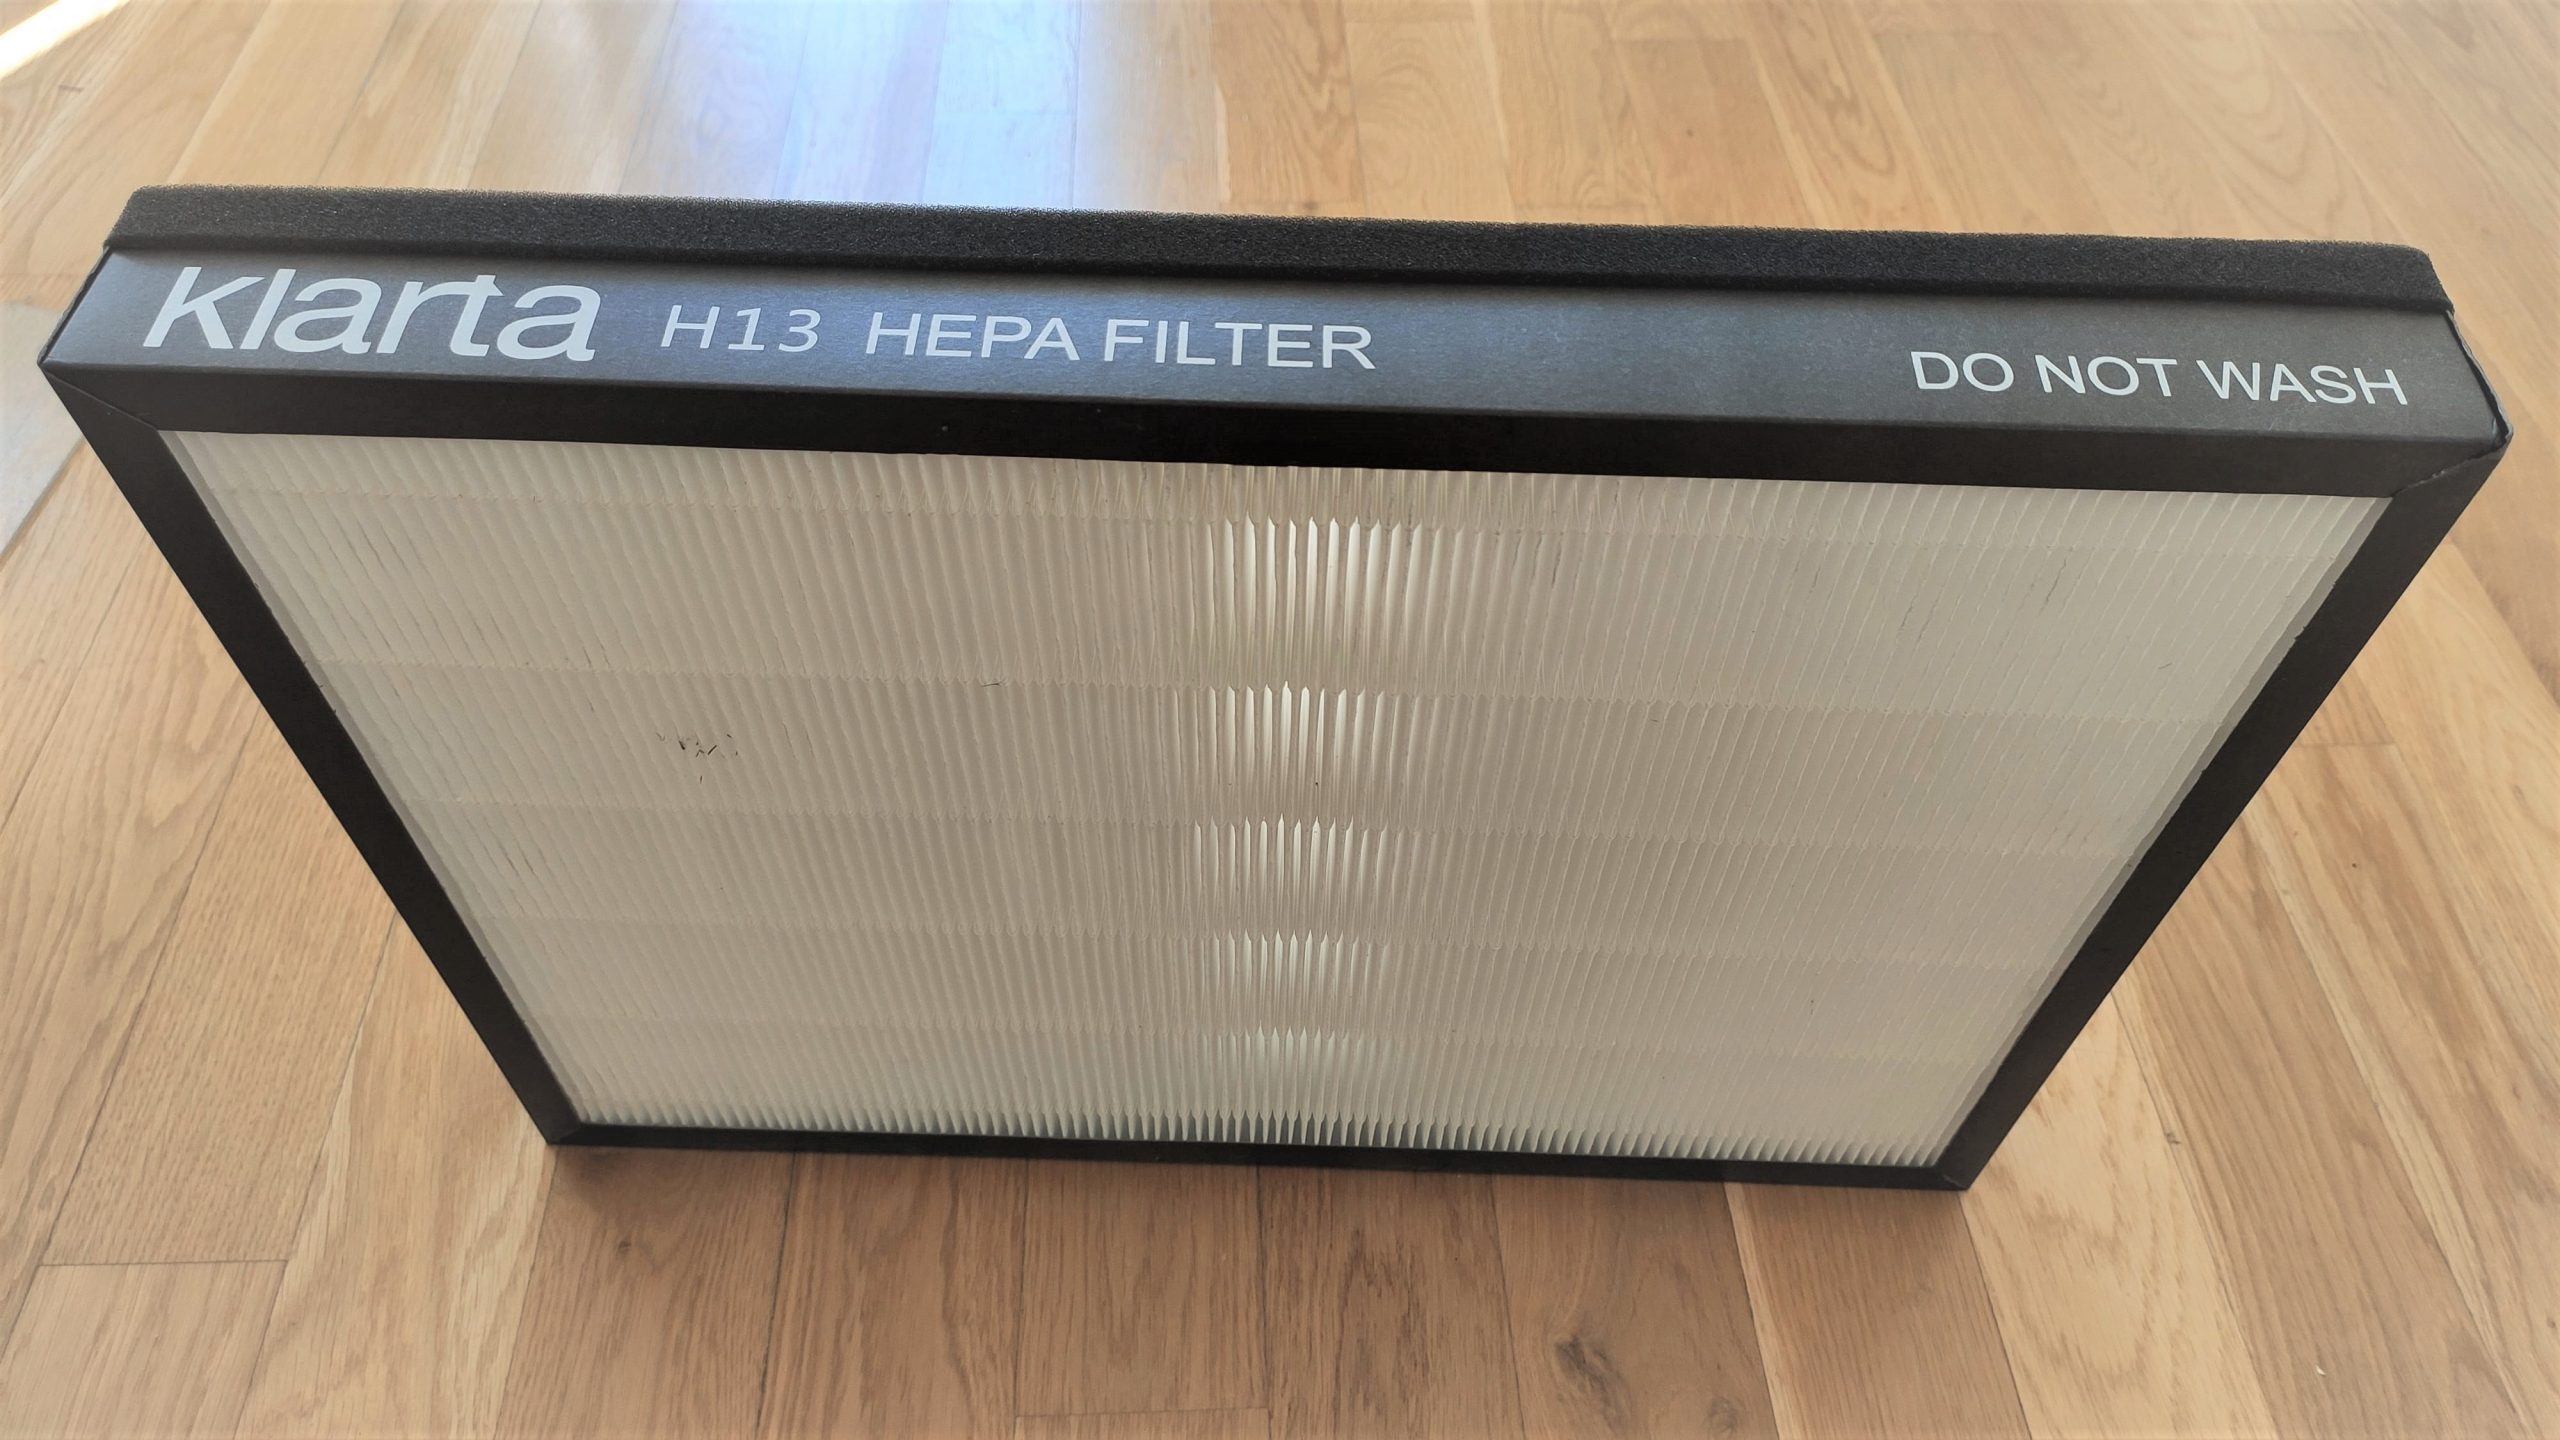 Filtr HEPA H13 Extra Fold Klarta Stor 2 recenzja